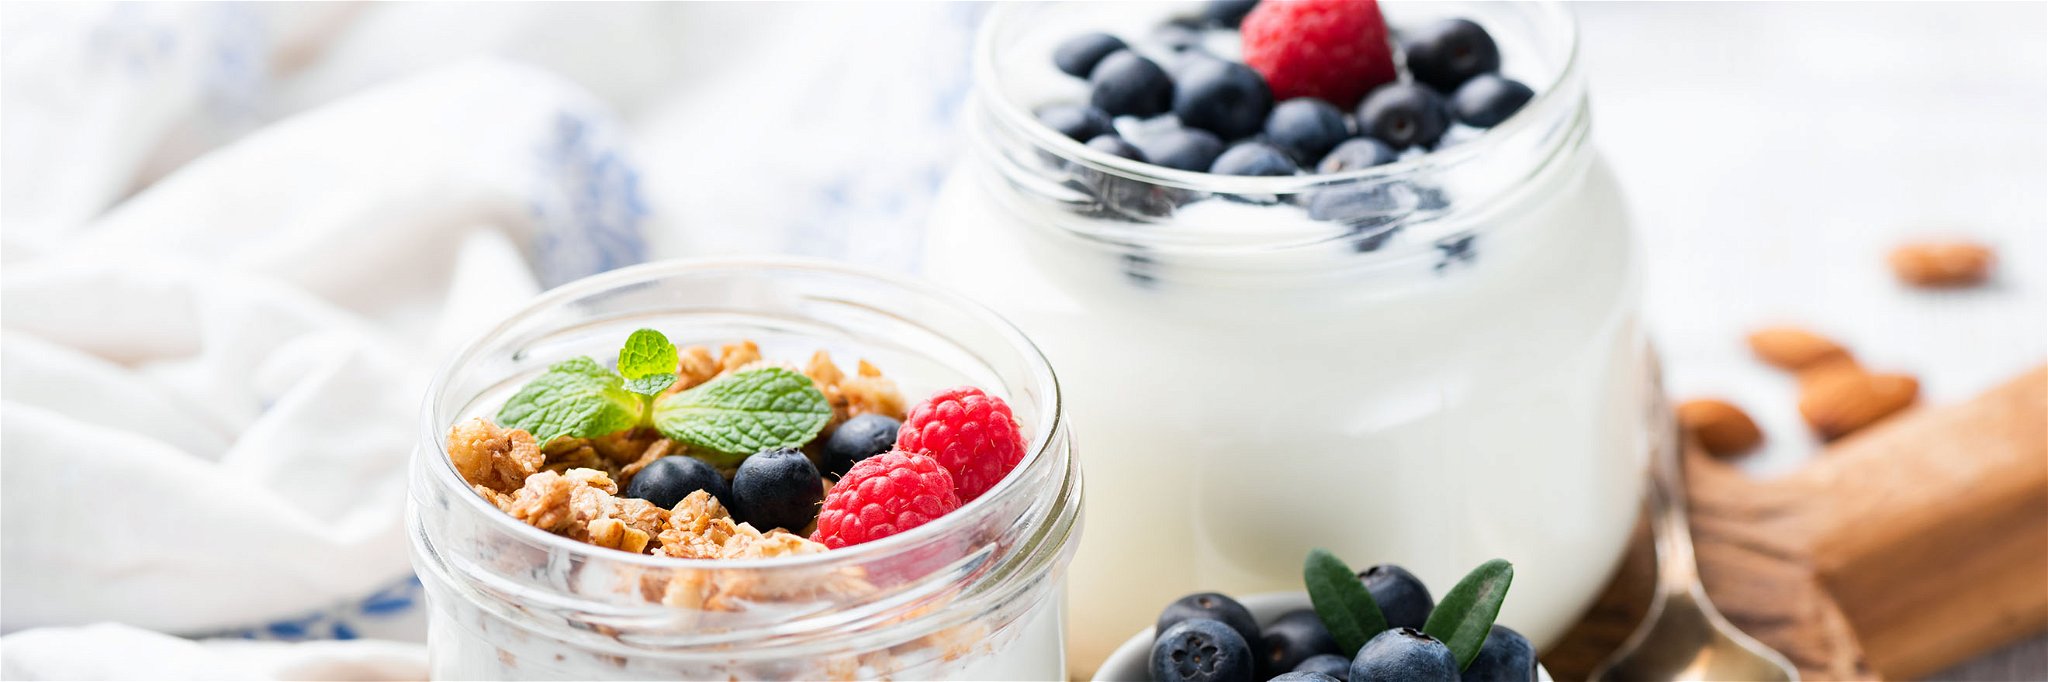 Unter anderem Joghurt kann dabei helfen, das Immunsystem zu stärken.